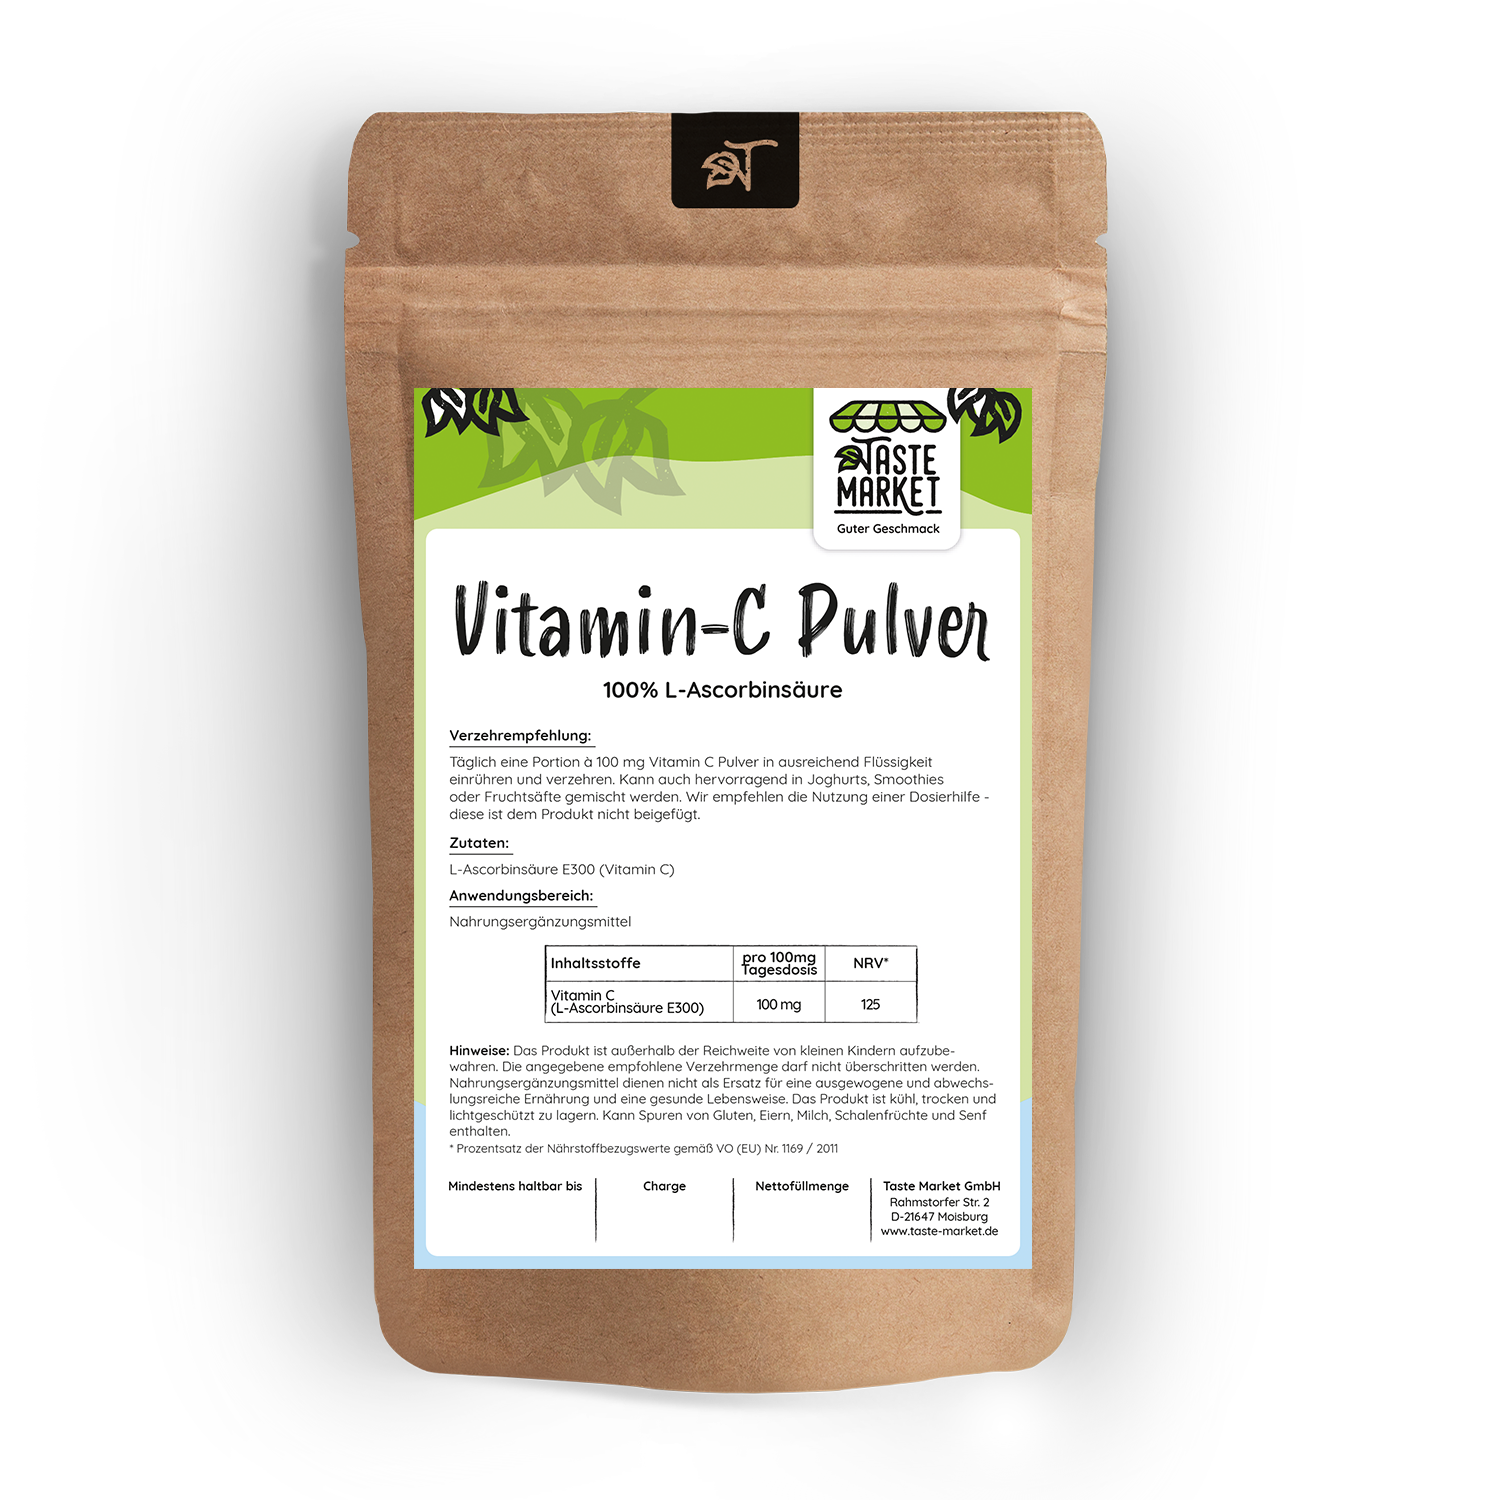 Vitamin c pulver 1 kg - Die ausgezeichnetesten Vitamin c pulver 1 kg ausführlich verglichen!